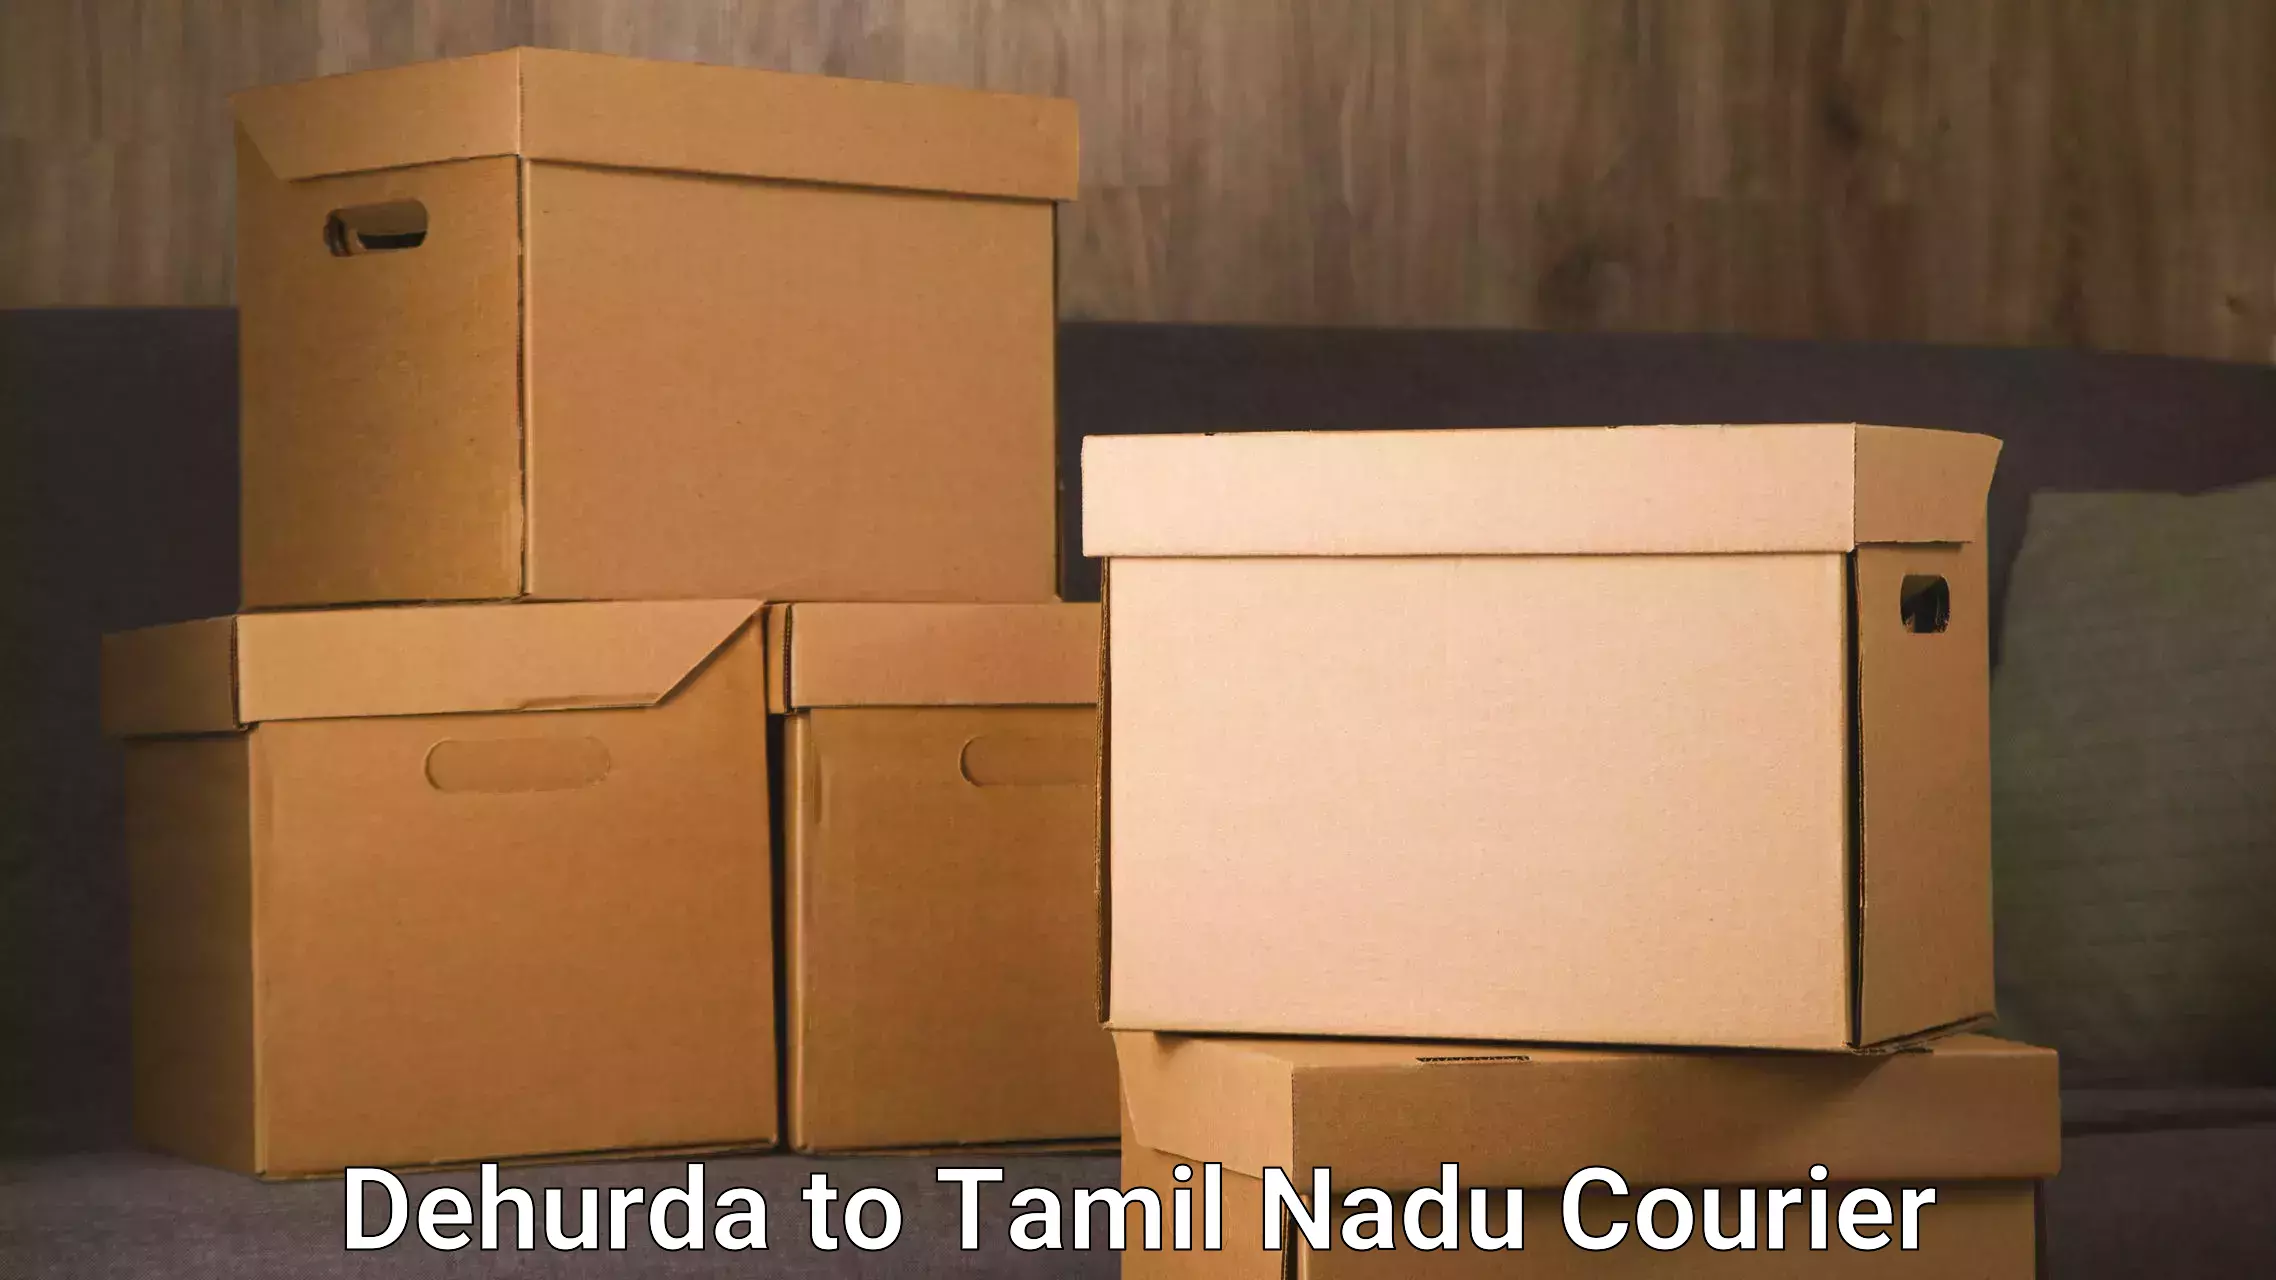 Modern courier technology Dehurda to Tamil Nadu